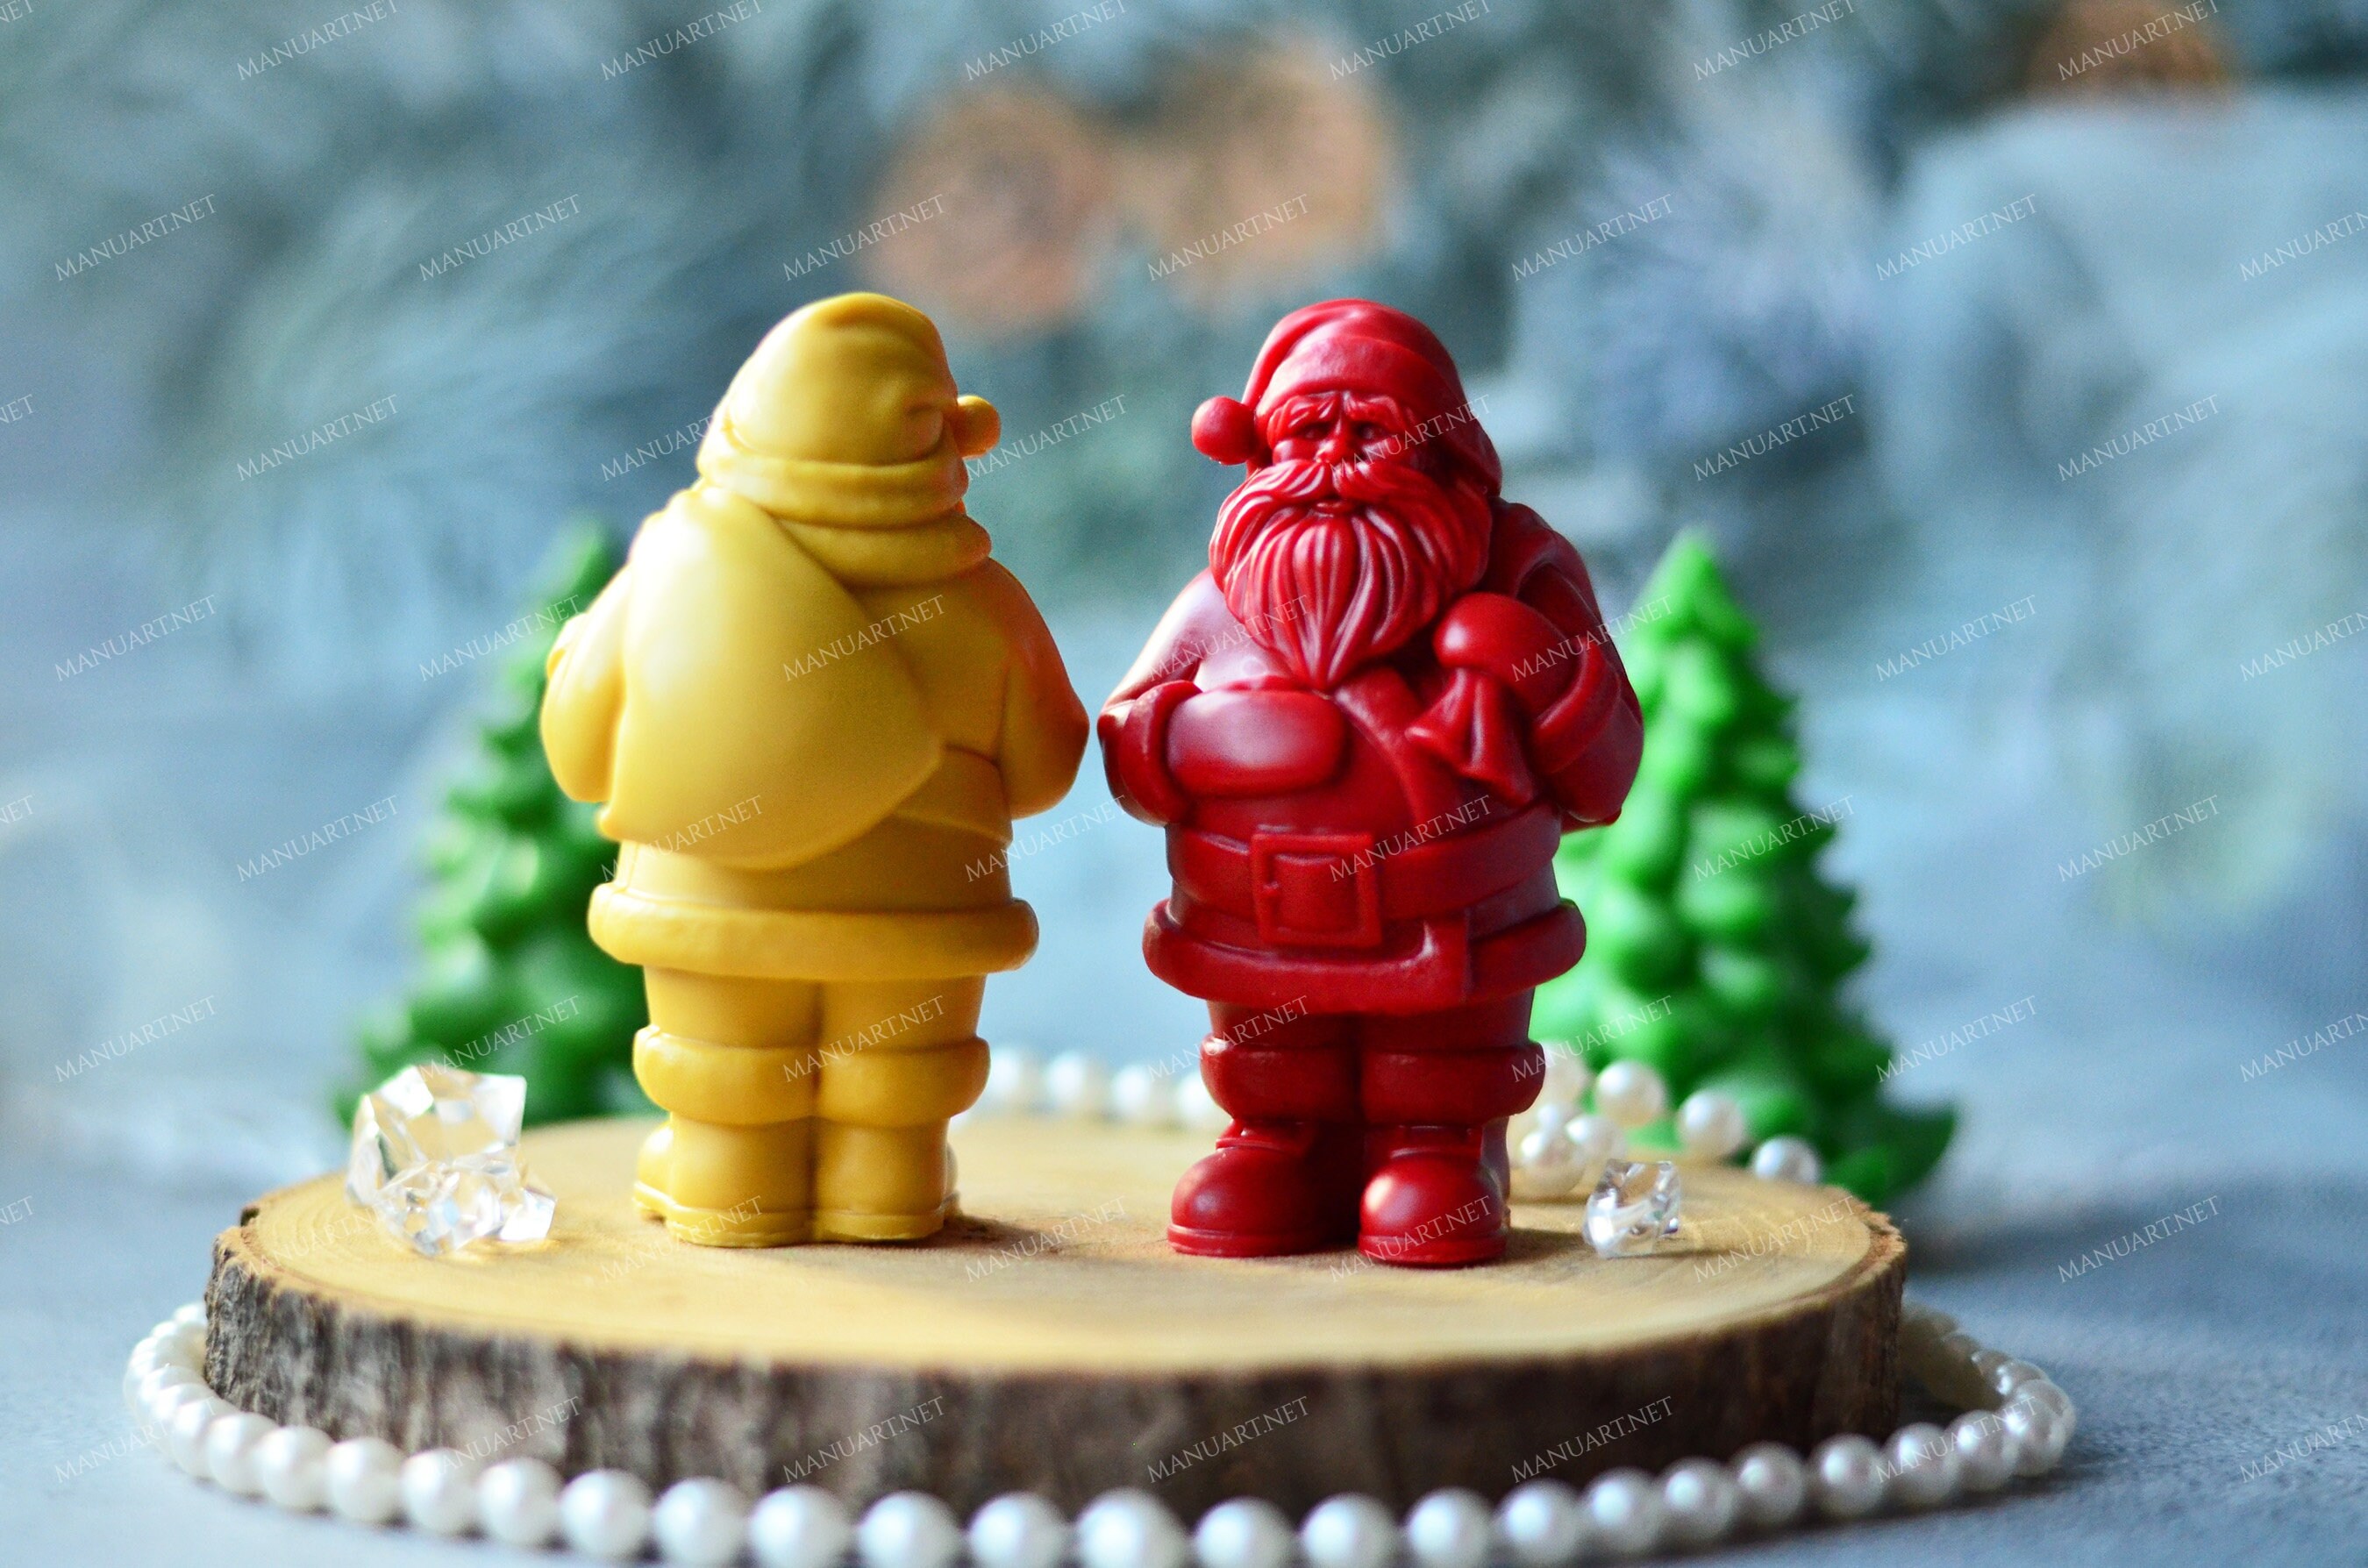 Christmas Santa Claus Silicone Cake Mold